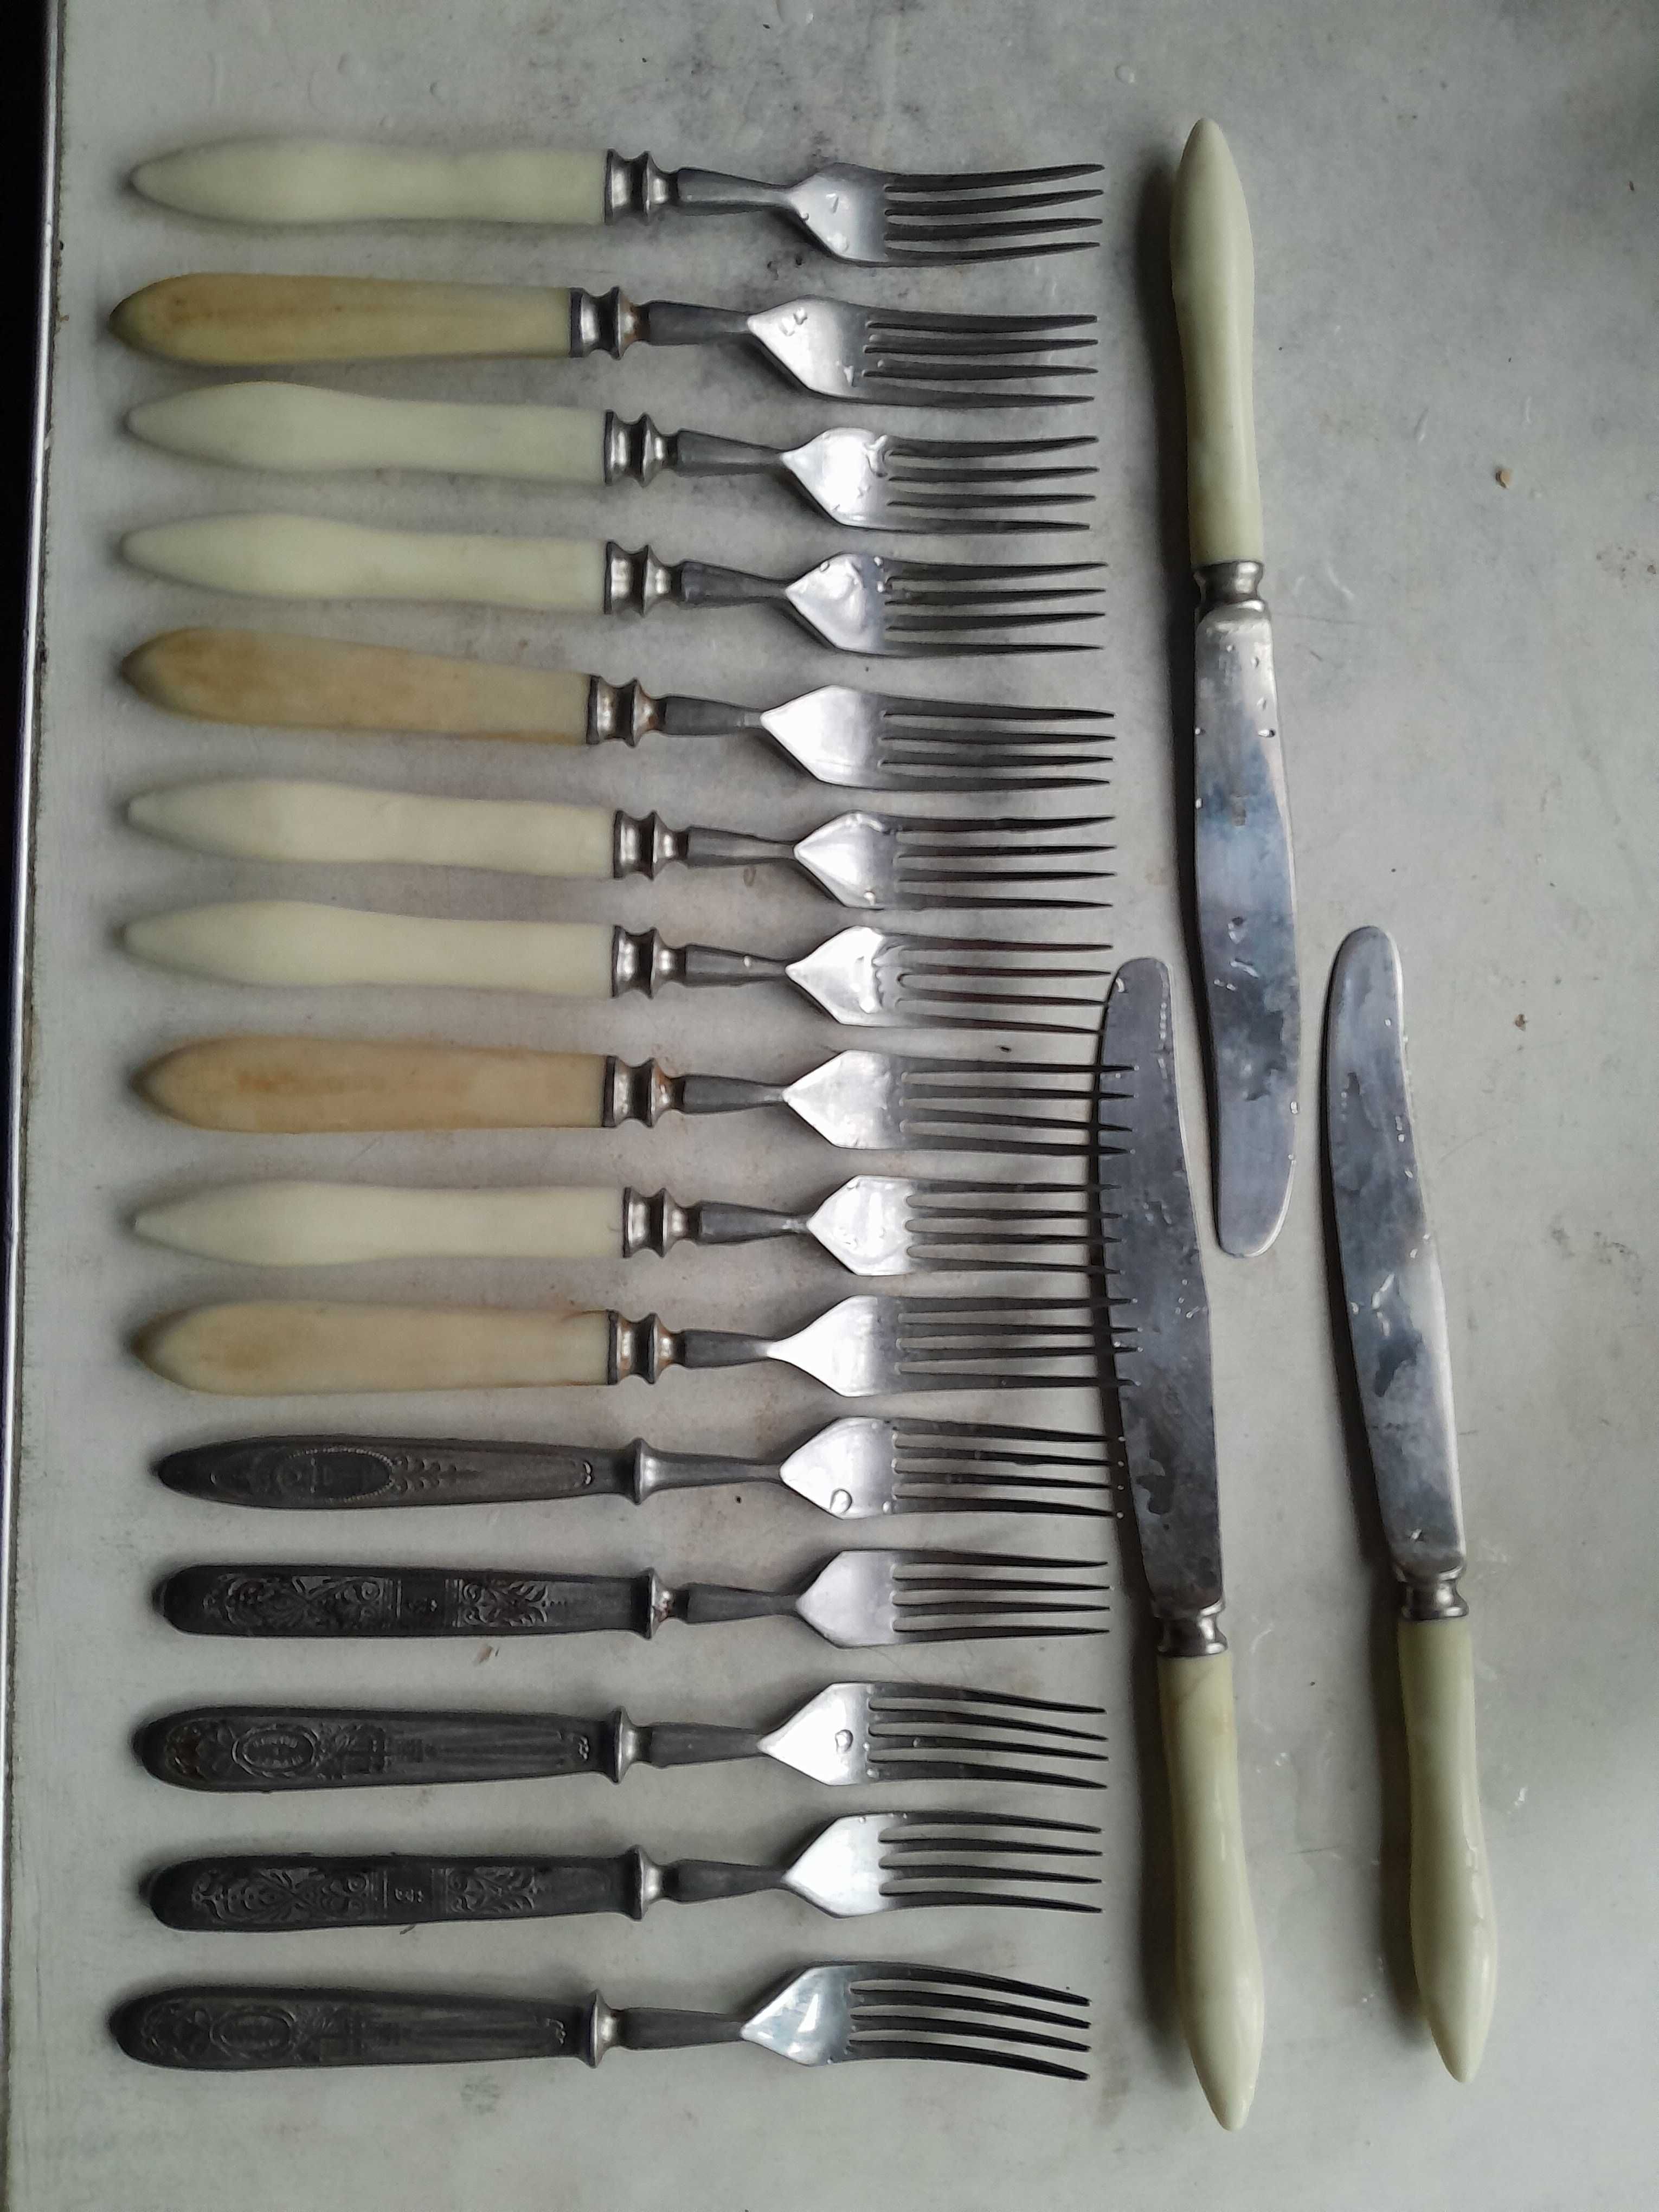 Вилки и ножи с бакалитовыми ручками